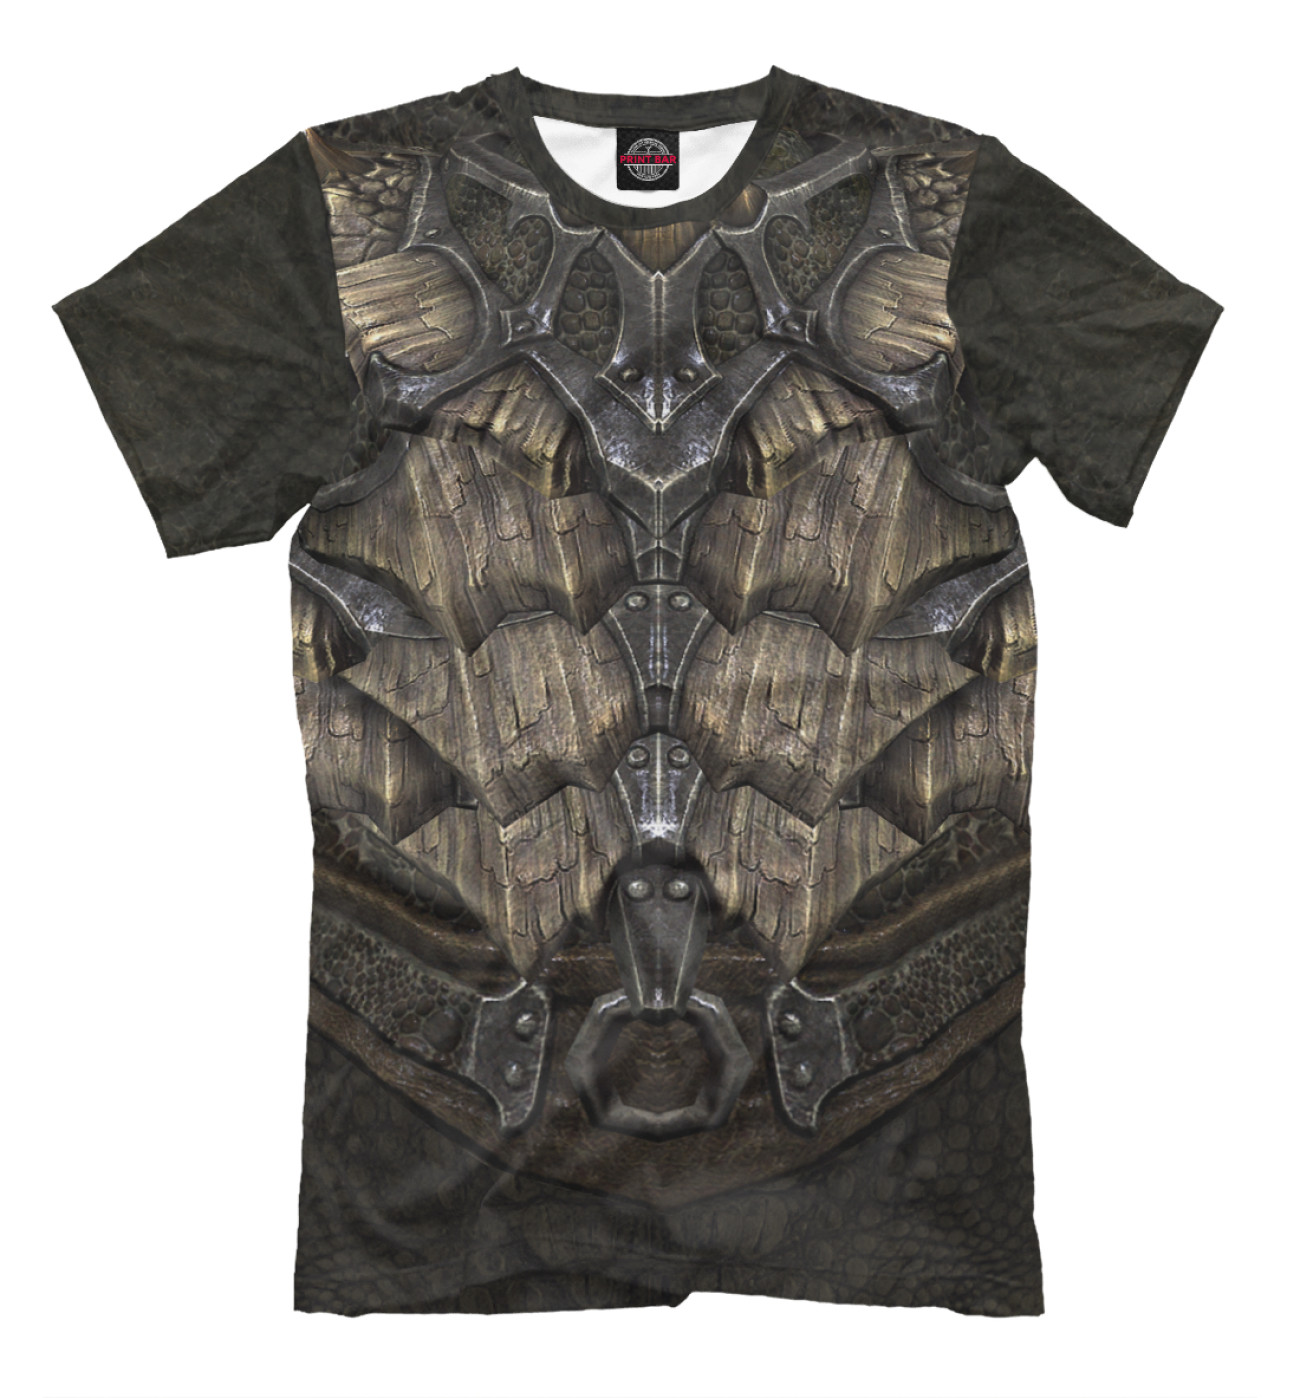 Мужская Футболка Skyrim: Dragonscale Armor, артикул: TES-519081-fut-2